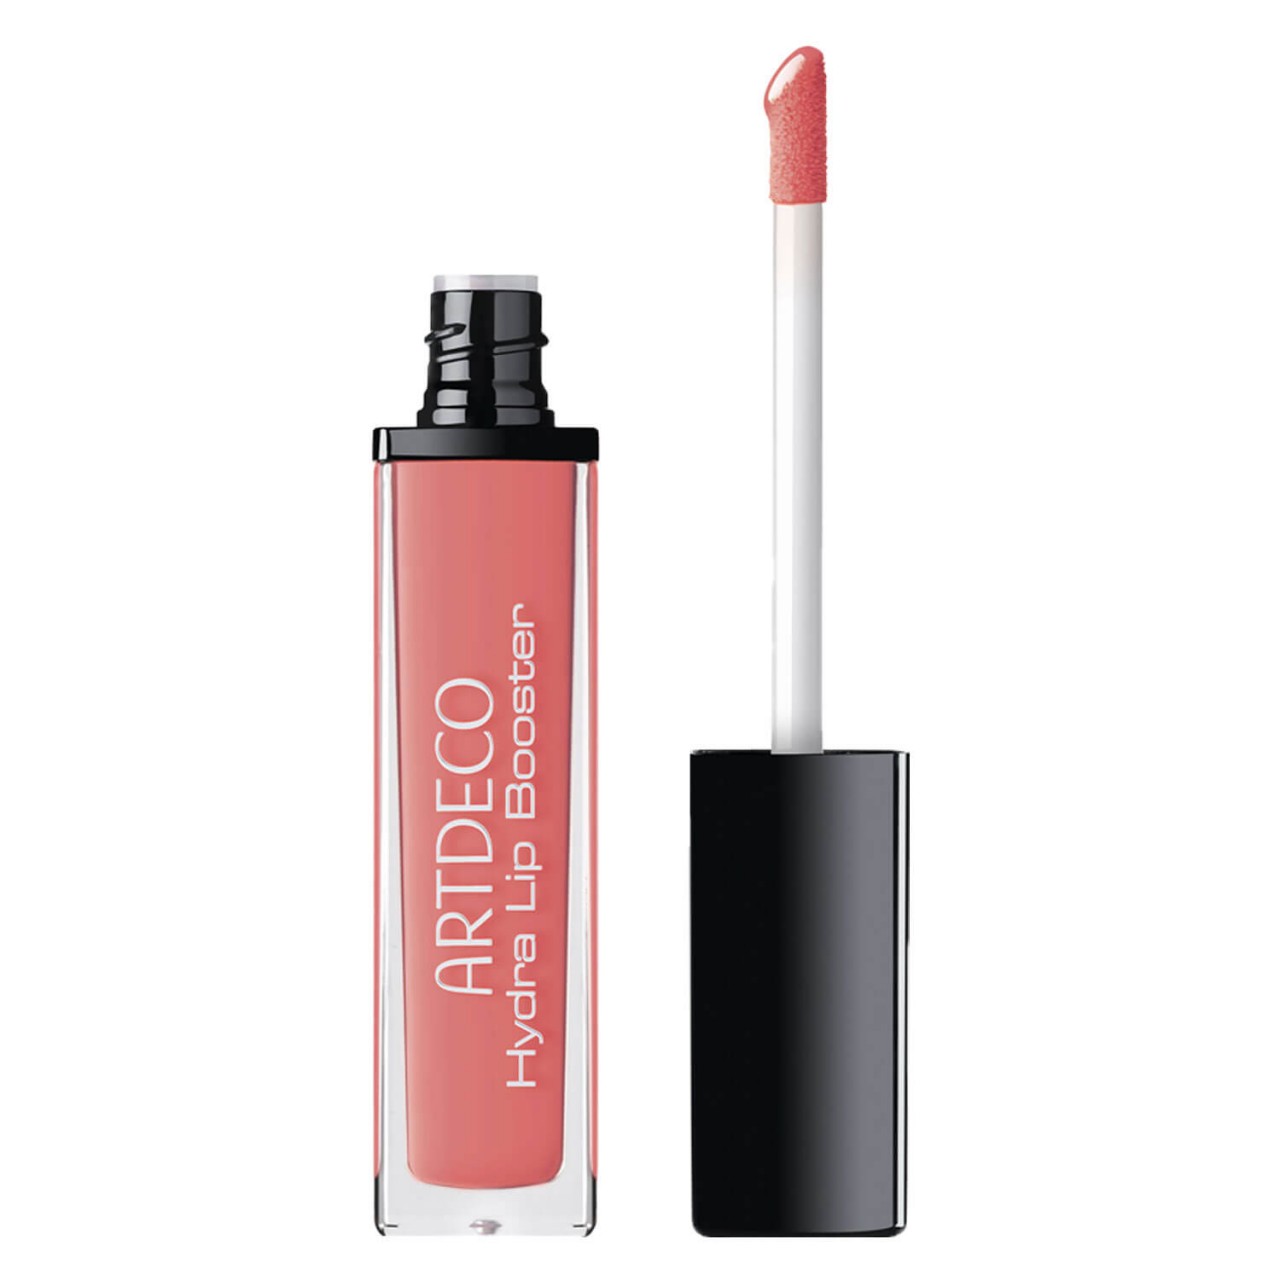 ARTDECO Make-up Specials 2019 Booster de Lèvres Hydra Gloss 6 ml Or rose